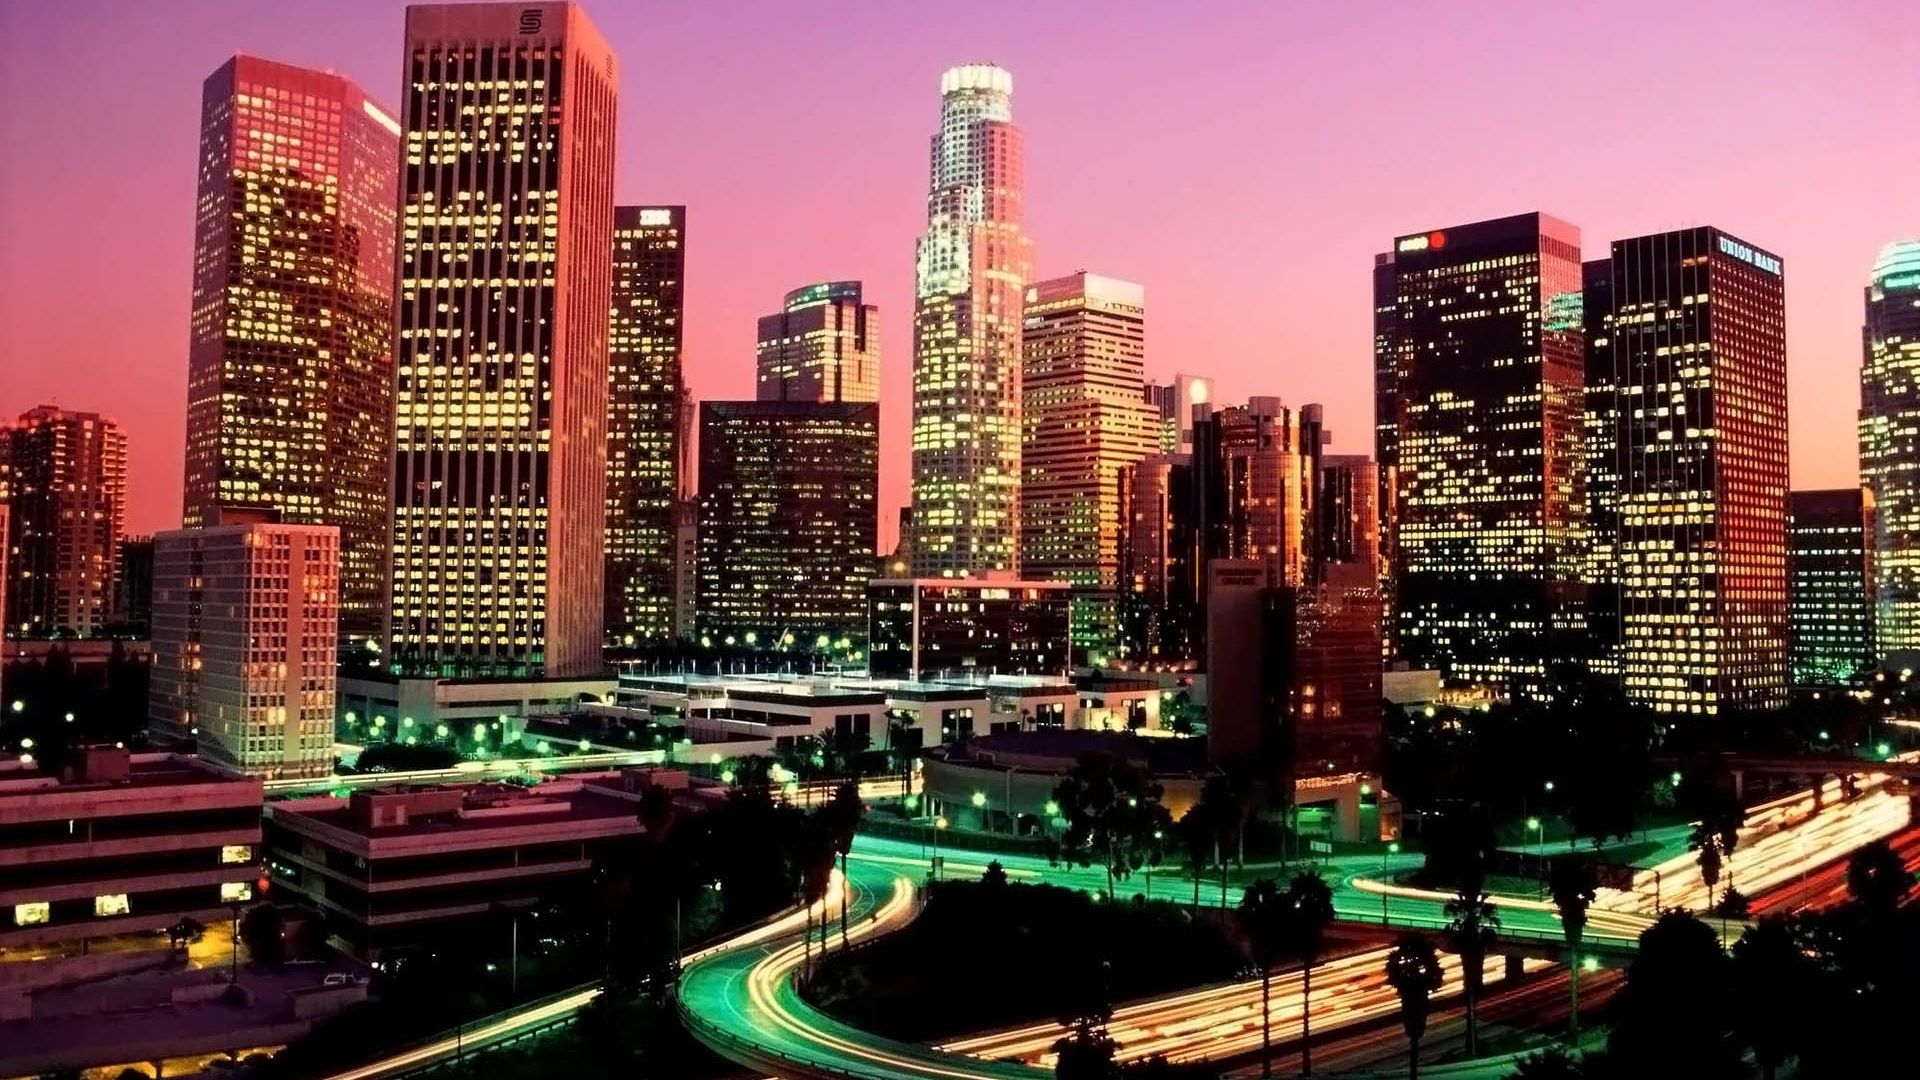 Los Angeles Skyline at Dusk